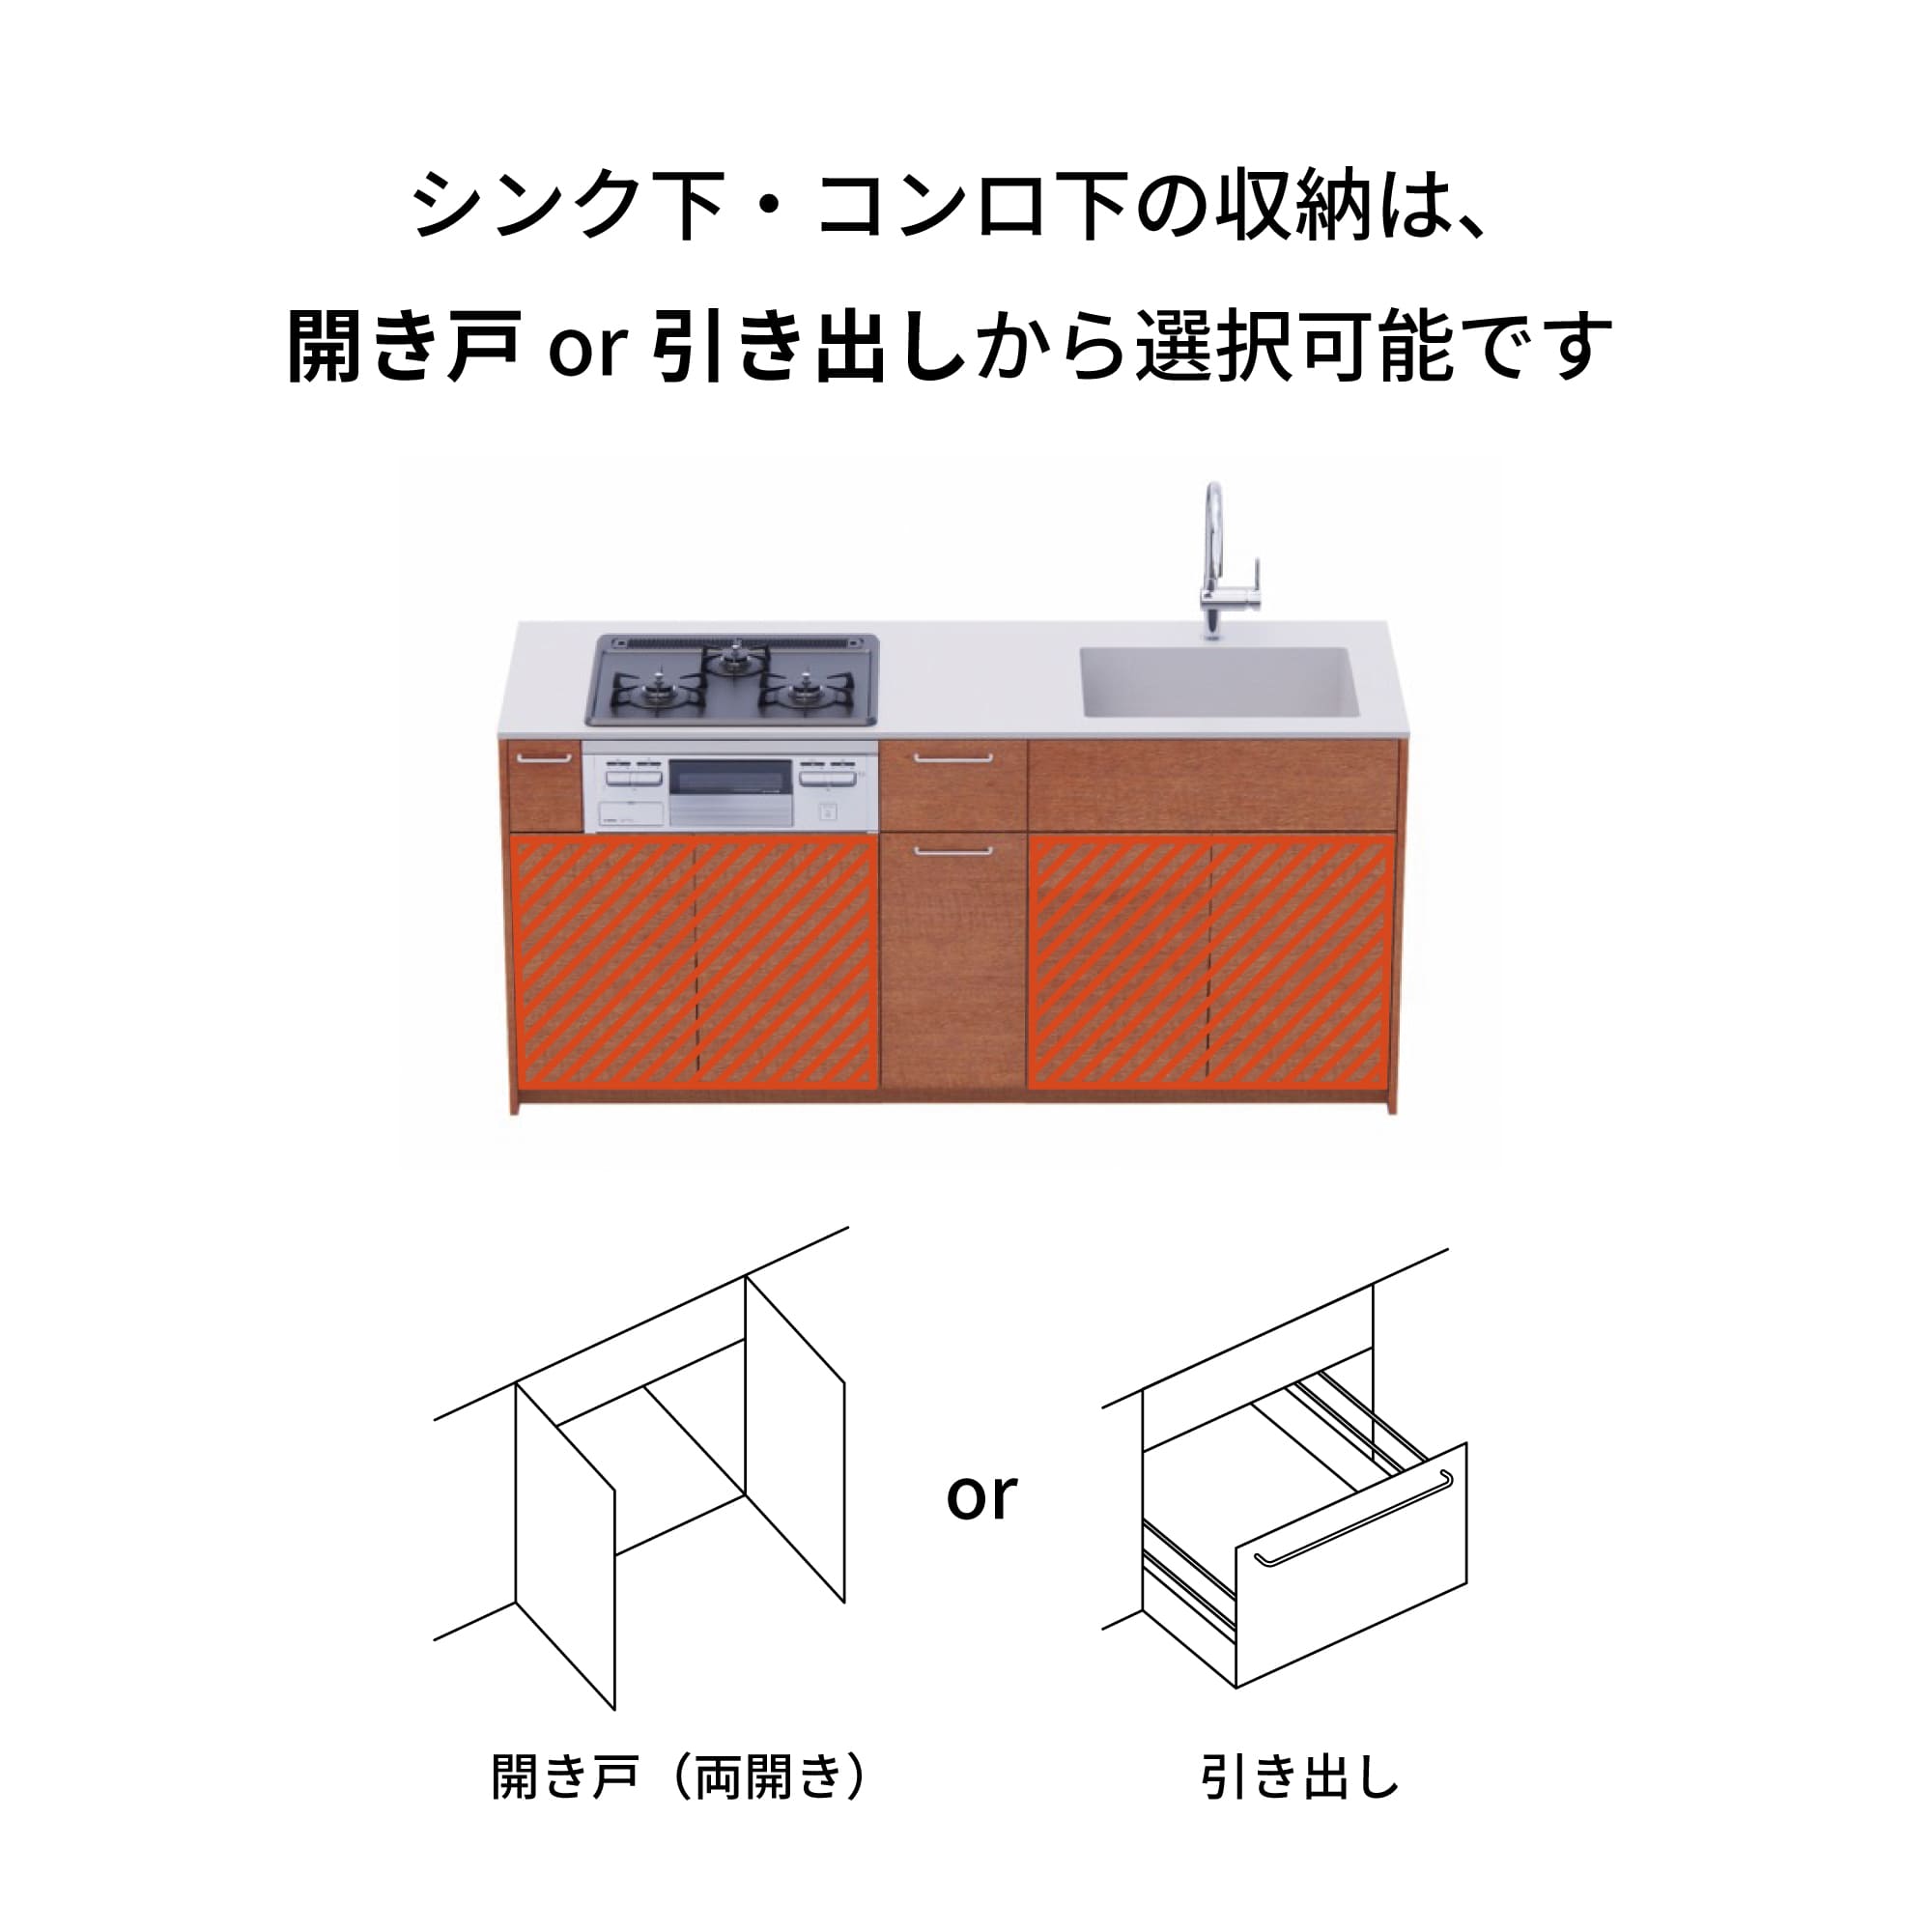 木製システムキッチン 壁付け型 W1840・コンロあり / オーブンなし / 食洗機なし KB-KC022-11-G183 引き出し下とコンロ下の収納が選択可能です